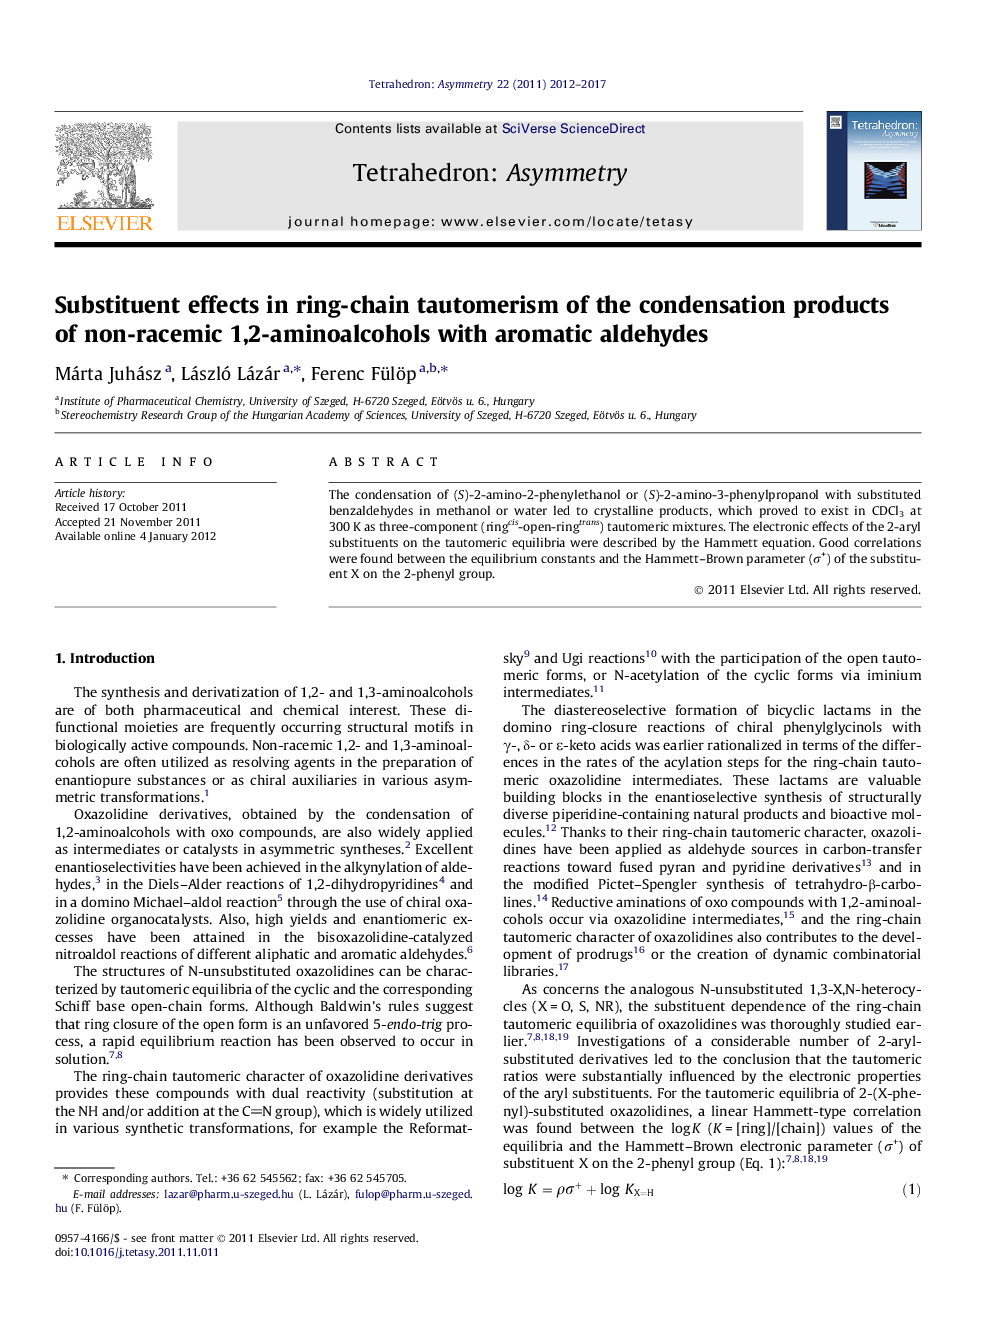 اثرات جانشینی در tautomerism حلقه زنجیره ای از محصولات تراکم غیر راسمیک 1،2-الکل آمینه با آلدئیدها معطر